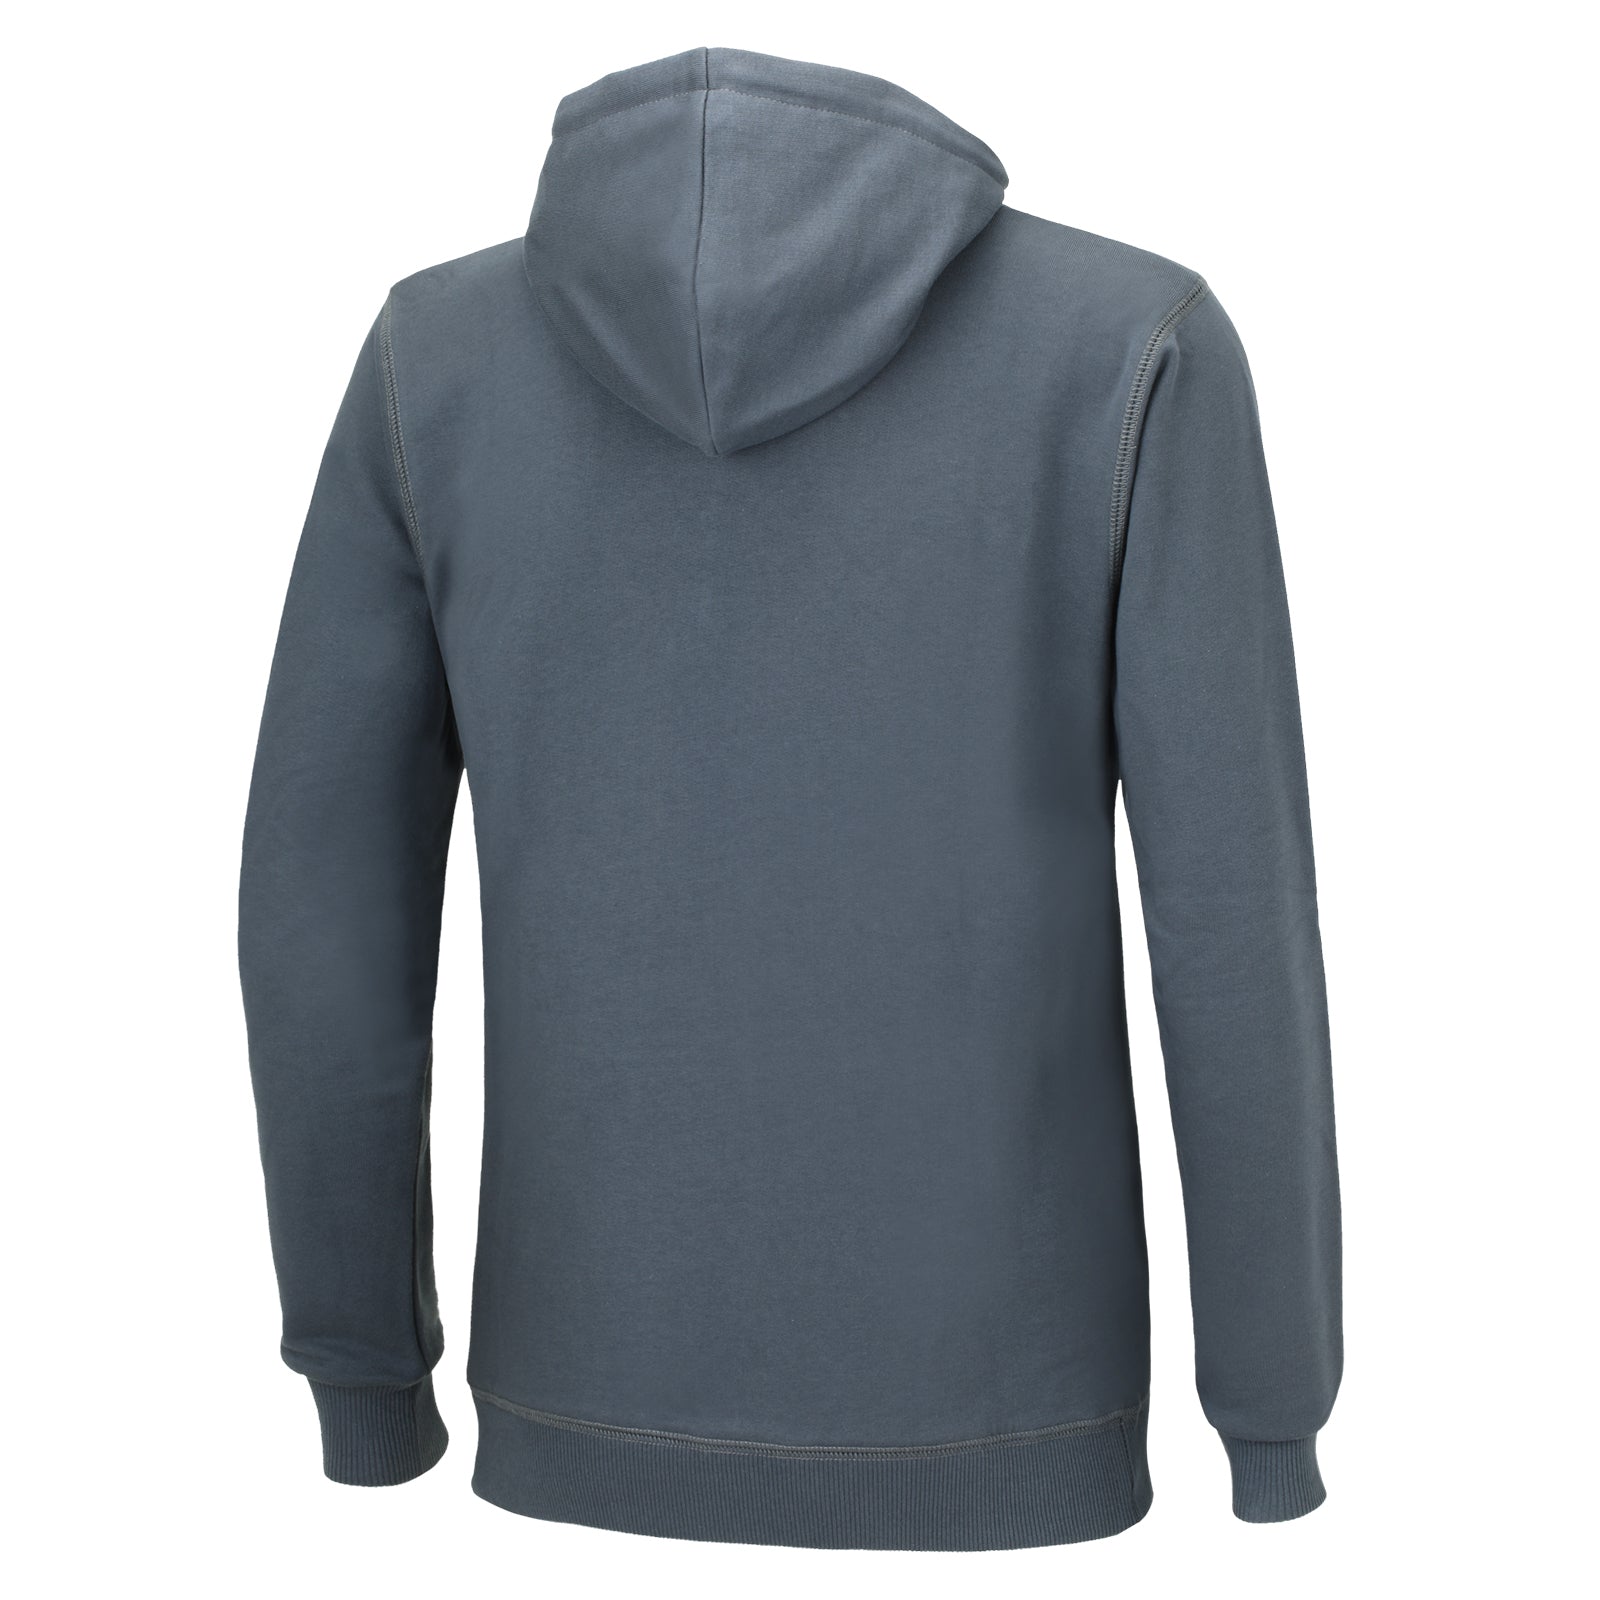 Sweatshirt-mit-kapuze-reissverschluss-winter-thermo-pro-hoodie-sweater-herren-damen-s-m-l-xl-xxl-grau-schwarz-back